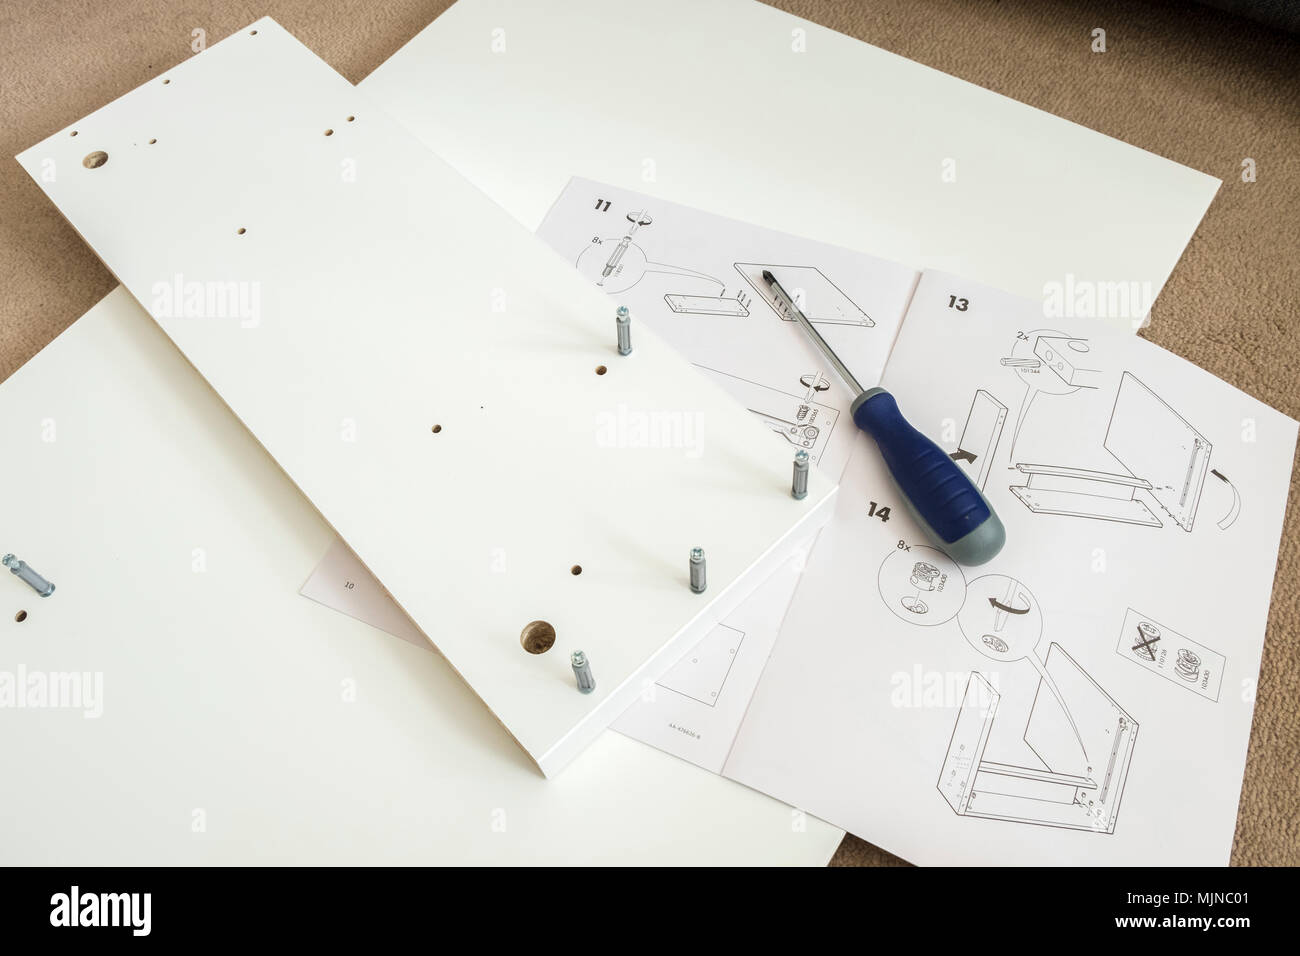 Ikea self assembly istruzioni di mobili e strumenti Foto Stock